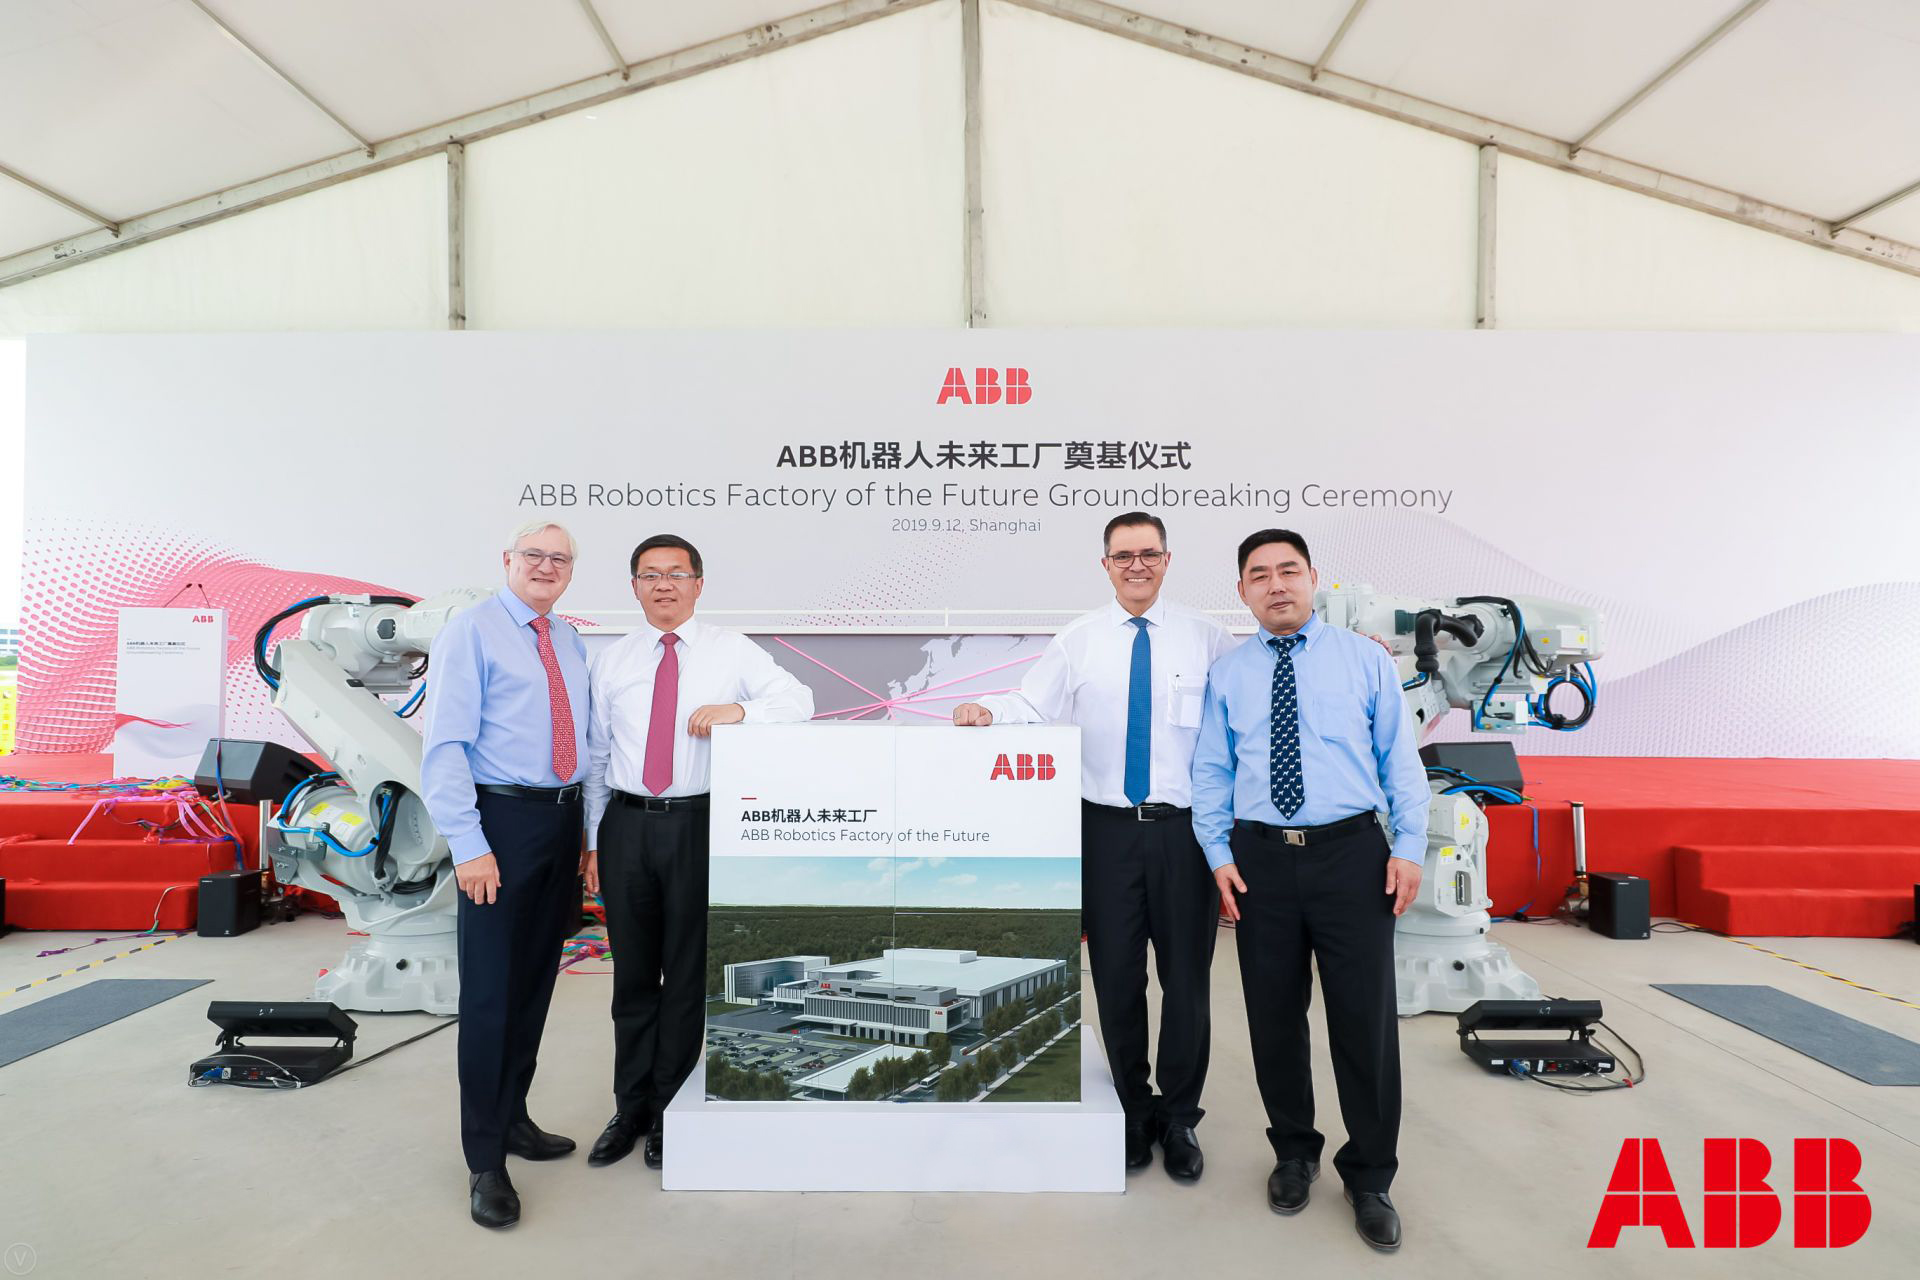 Az ABB a világ legkorszerűbb robotikai gyárát építi Sanghajban